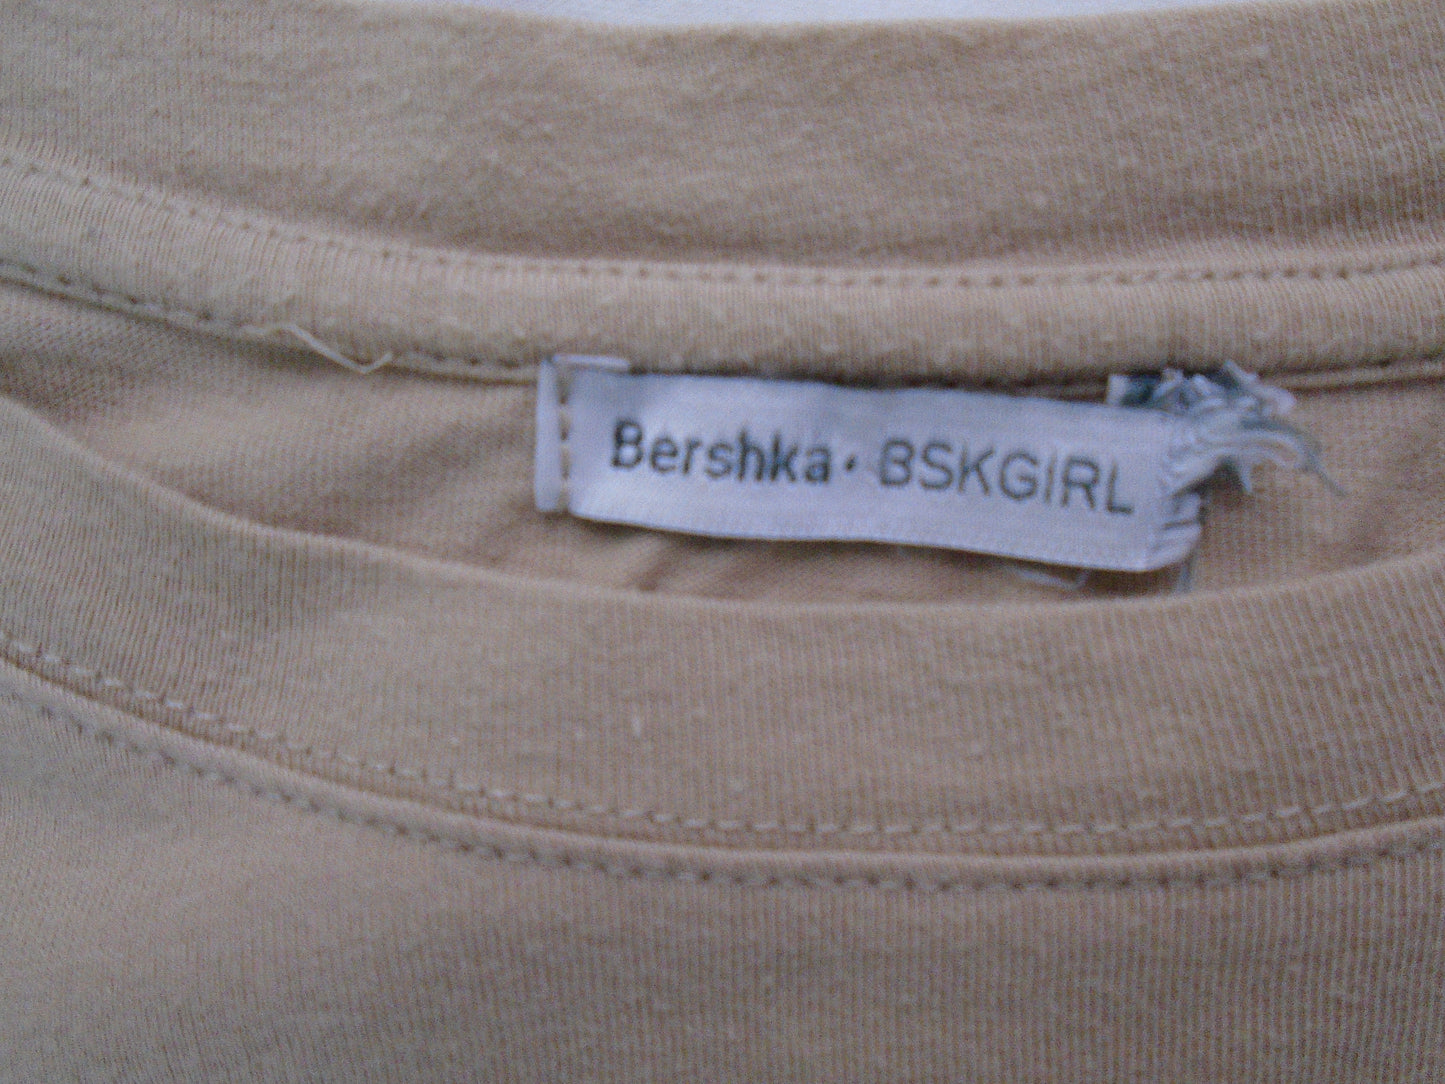 Camiseta Mujer Bershka. Color beige. Tamaño: S.